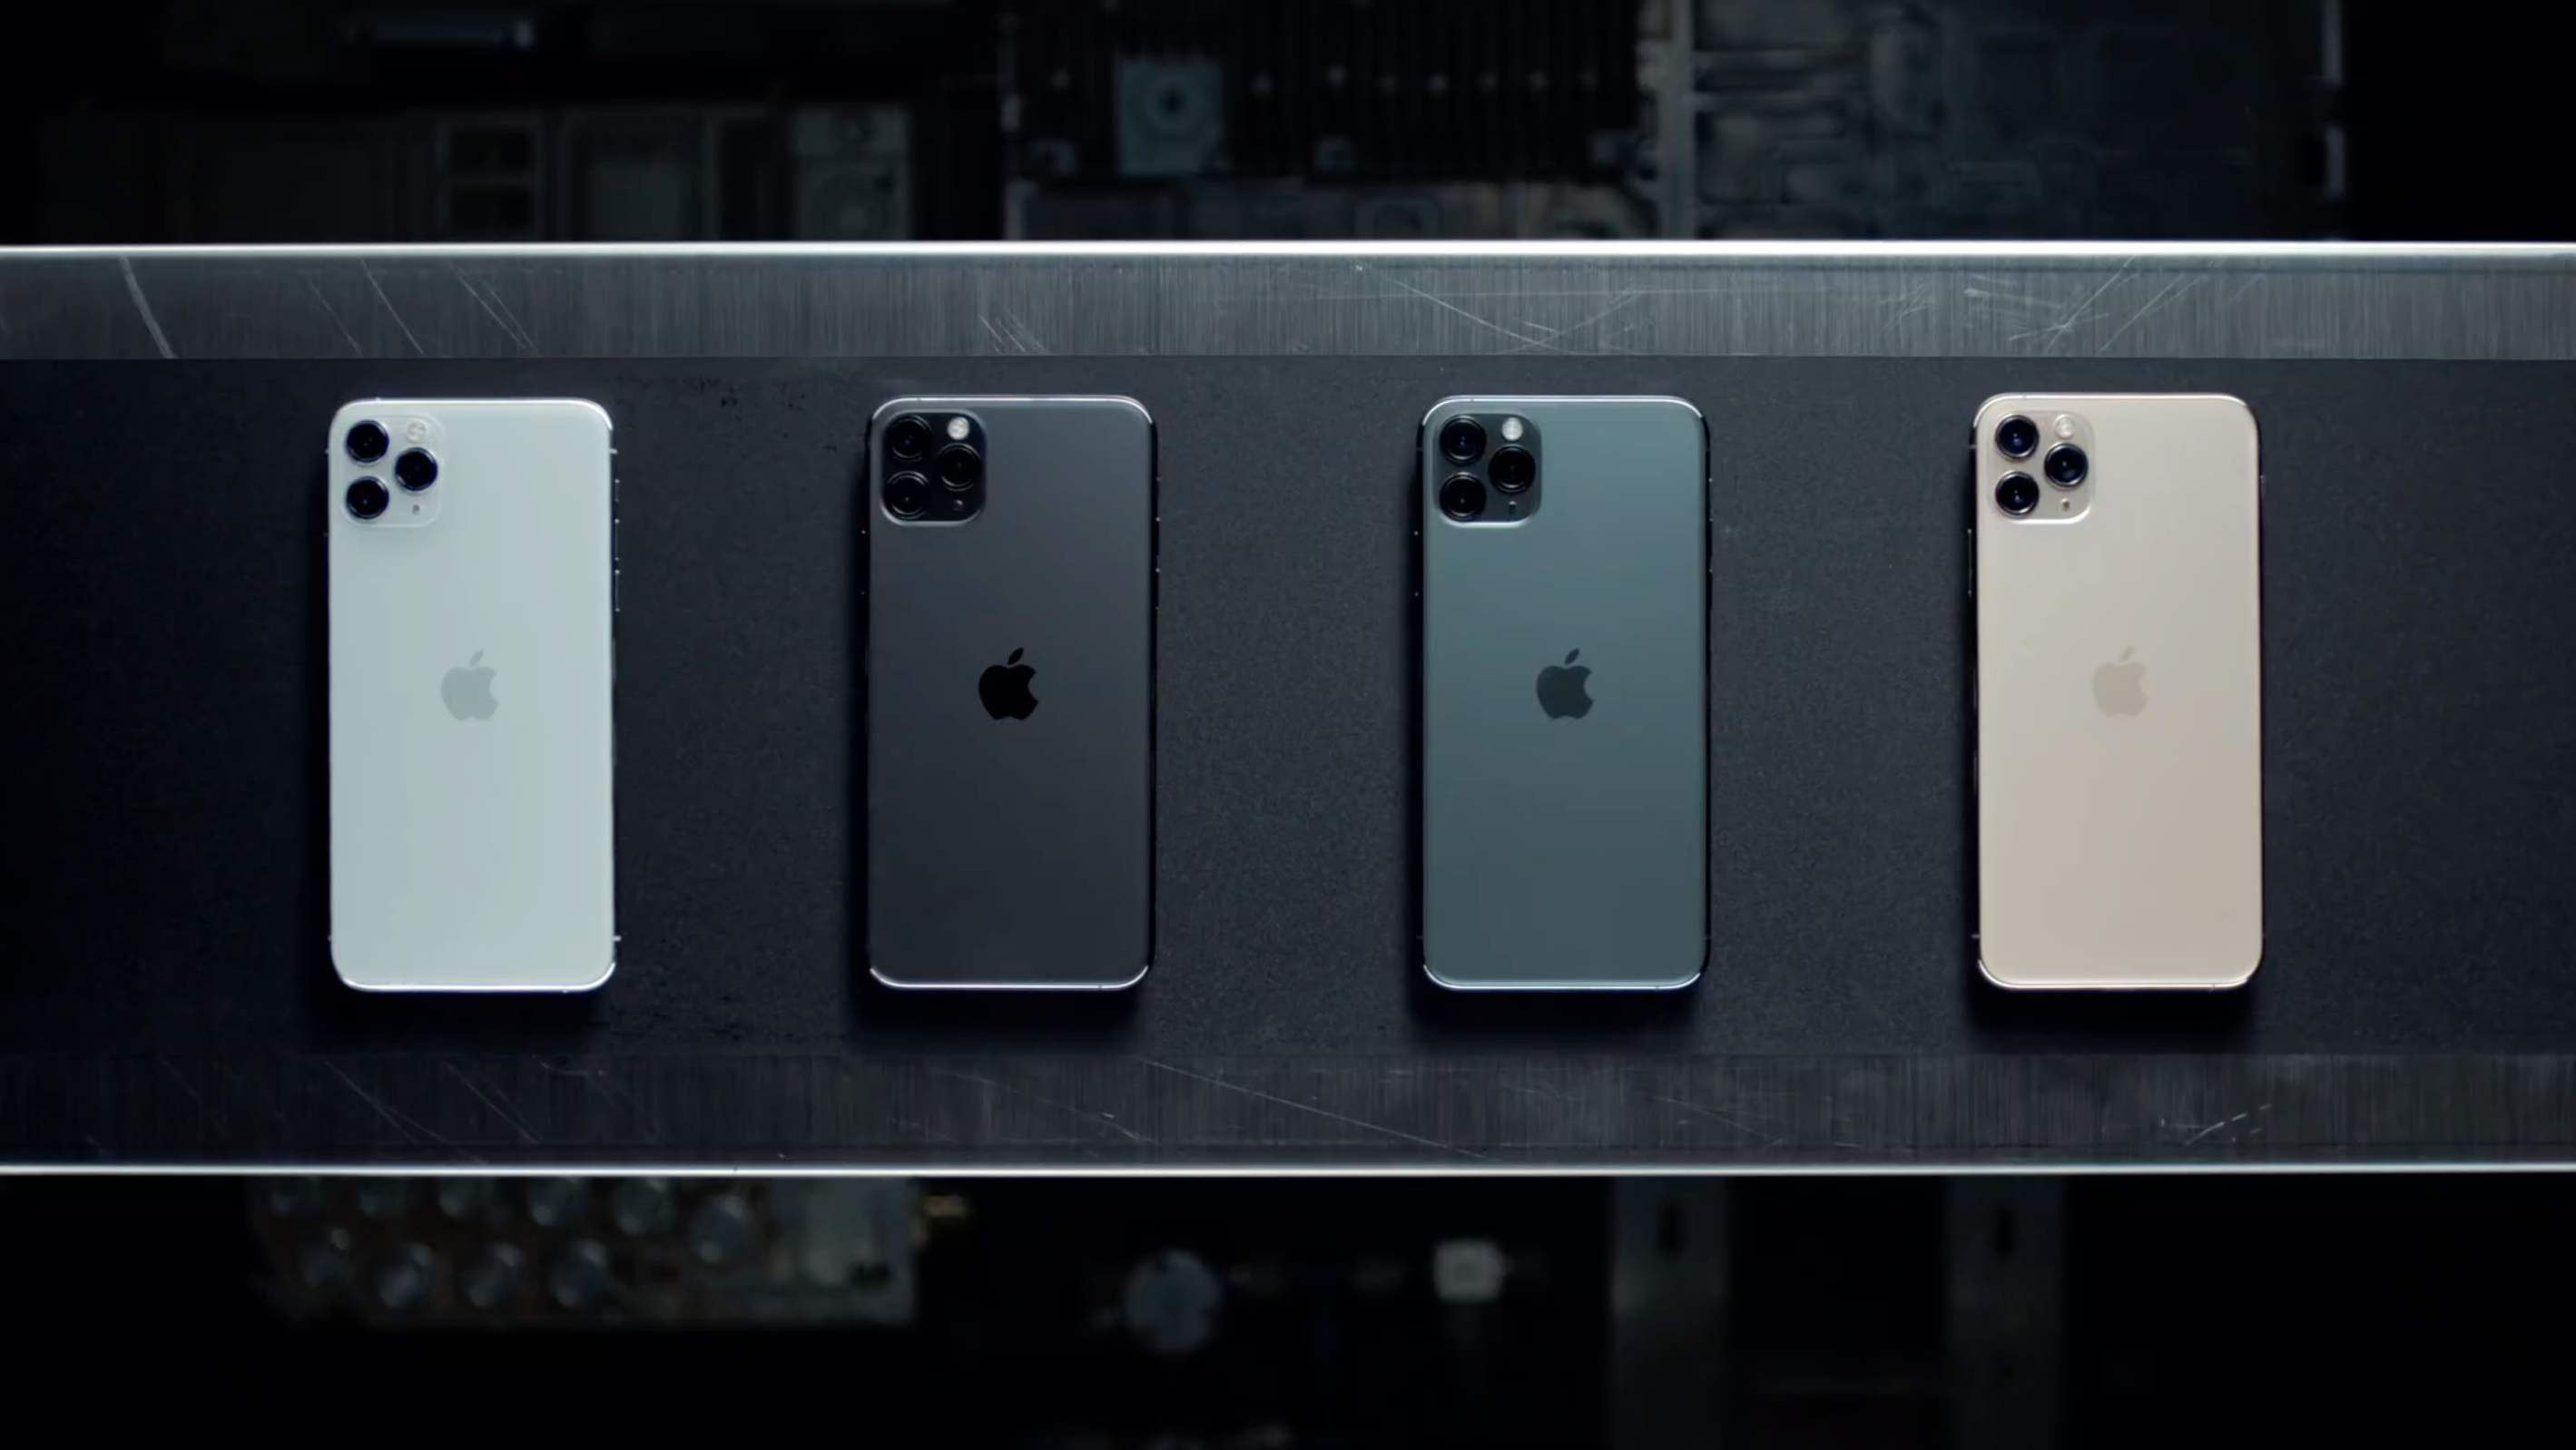 iPhone 11 Pro-modellene kommer i fire nye farger.